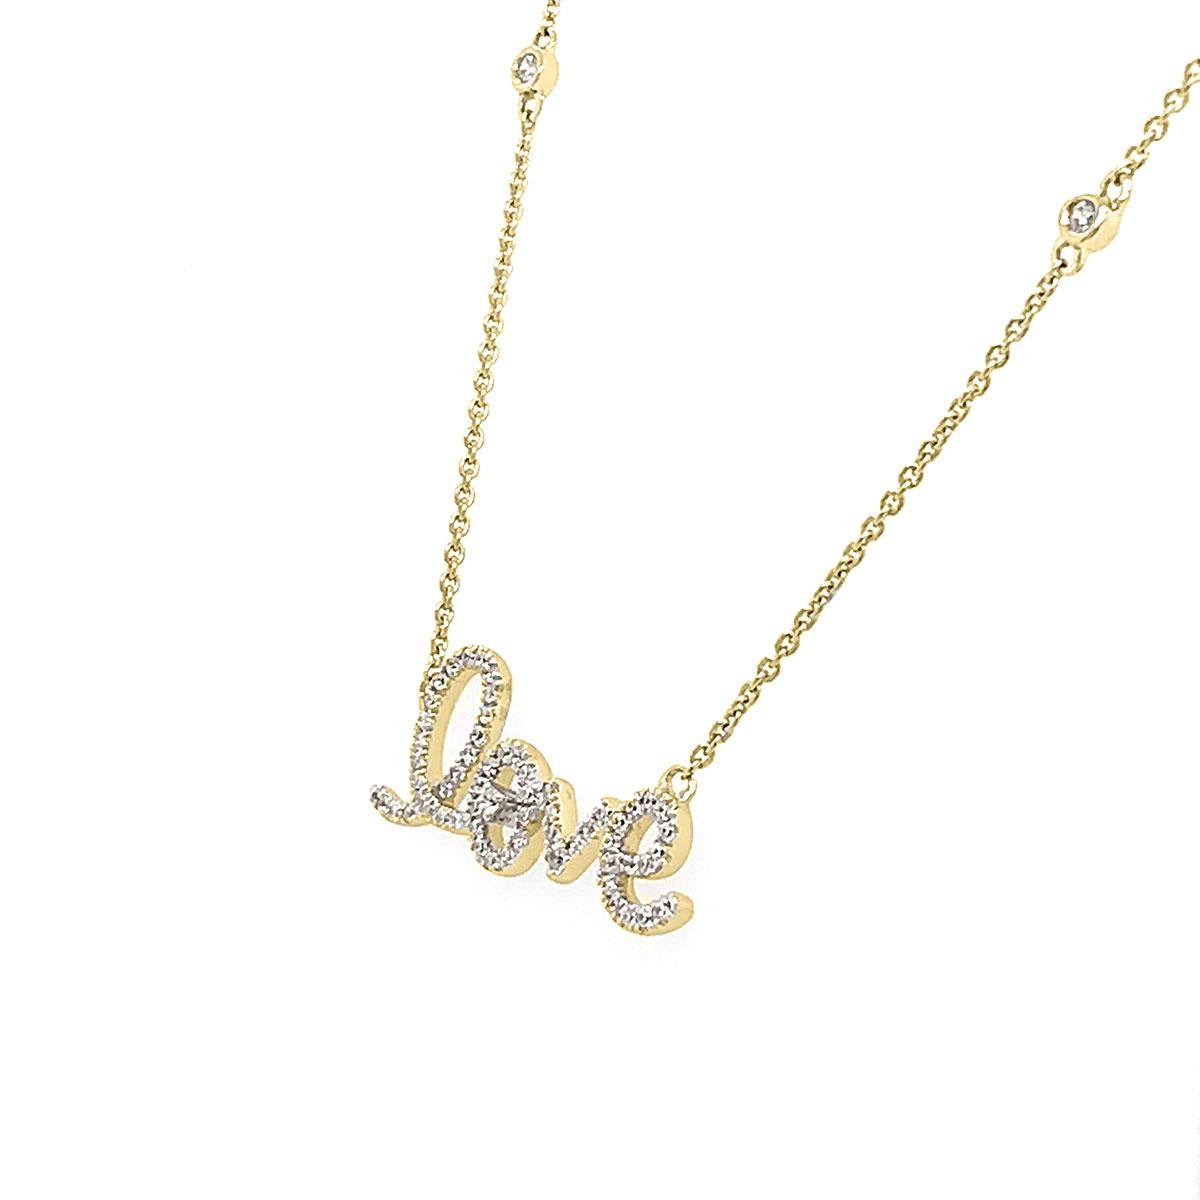 Cet élégant collier est composé de quatre (4) diamants brillants répartis uniformément et sertis sur une chaîne délicate reliée à un pendentif Love Diamond Micro-Prong -Set. Un cadeau idéal pour l'anniversaire, la Saint-Valentin ou la remise de